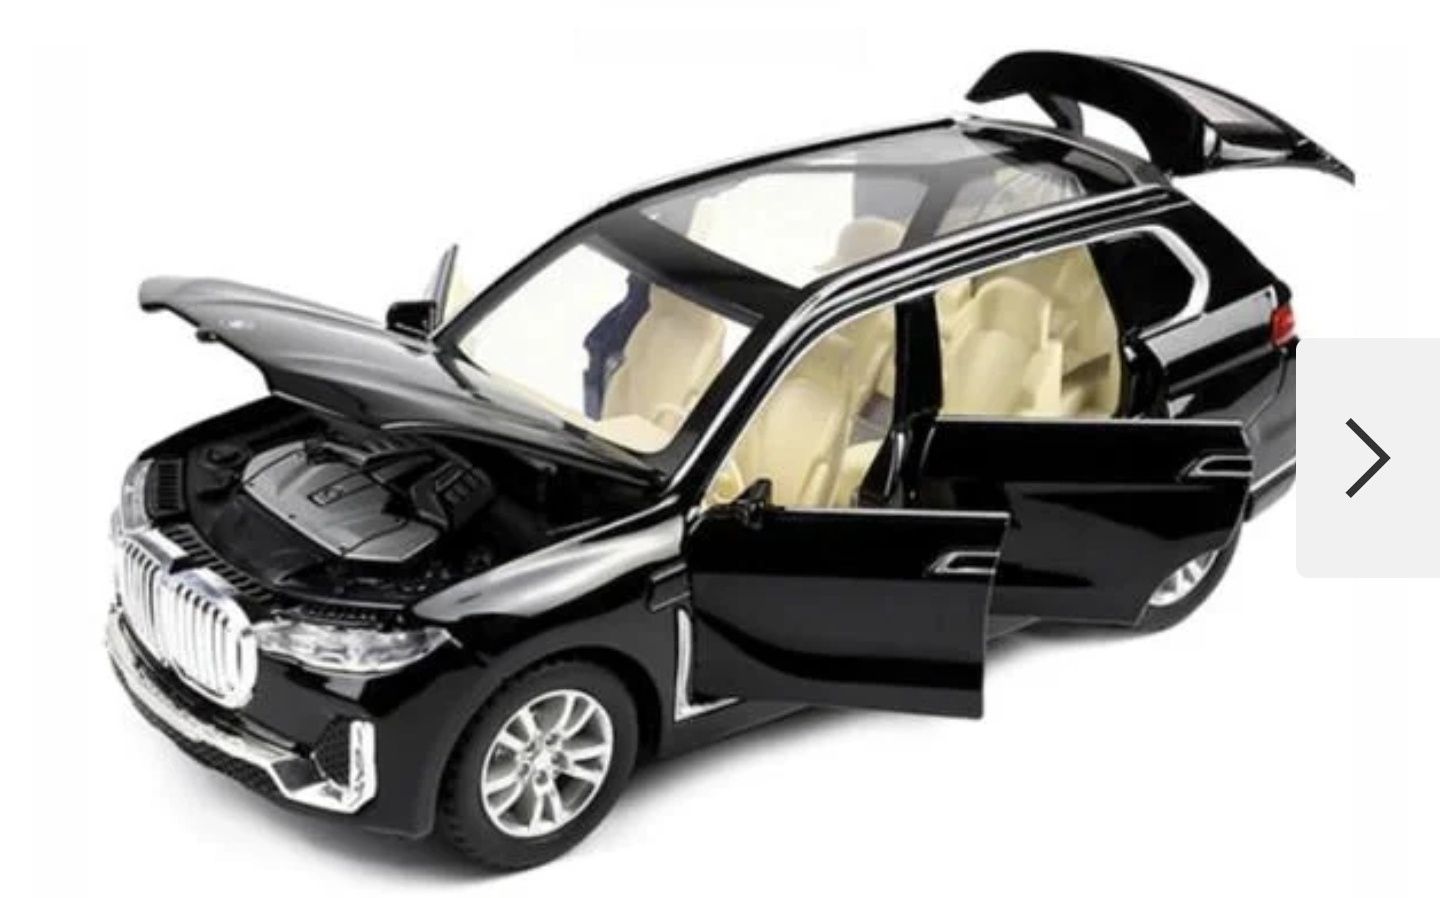 Машинка BMW X7 игрушка металлическая моделька 1:24 Черная...
Подробнее